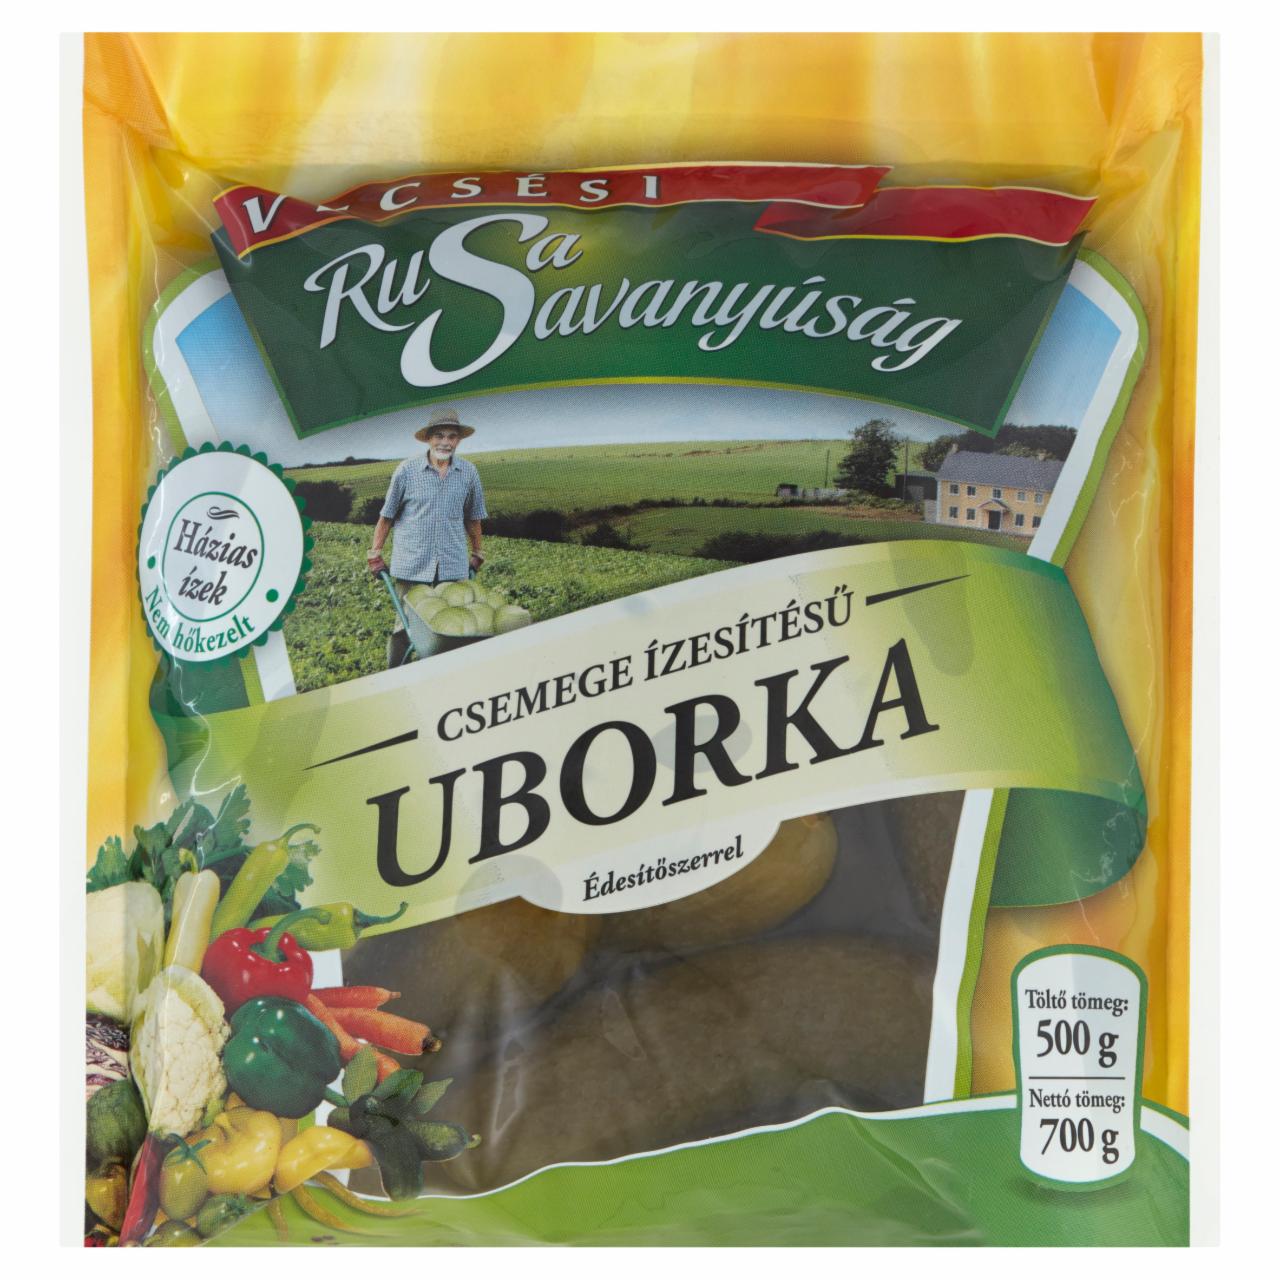 Képek - Rusa Savanyúság csemege ízesítésű uborka édesítőszerrel 700 g